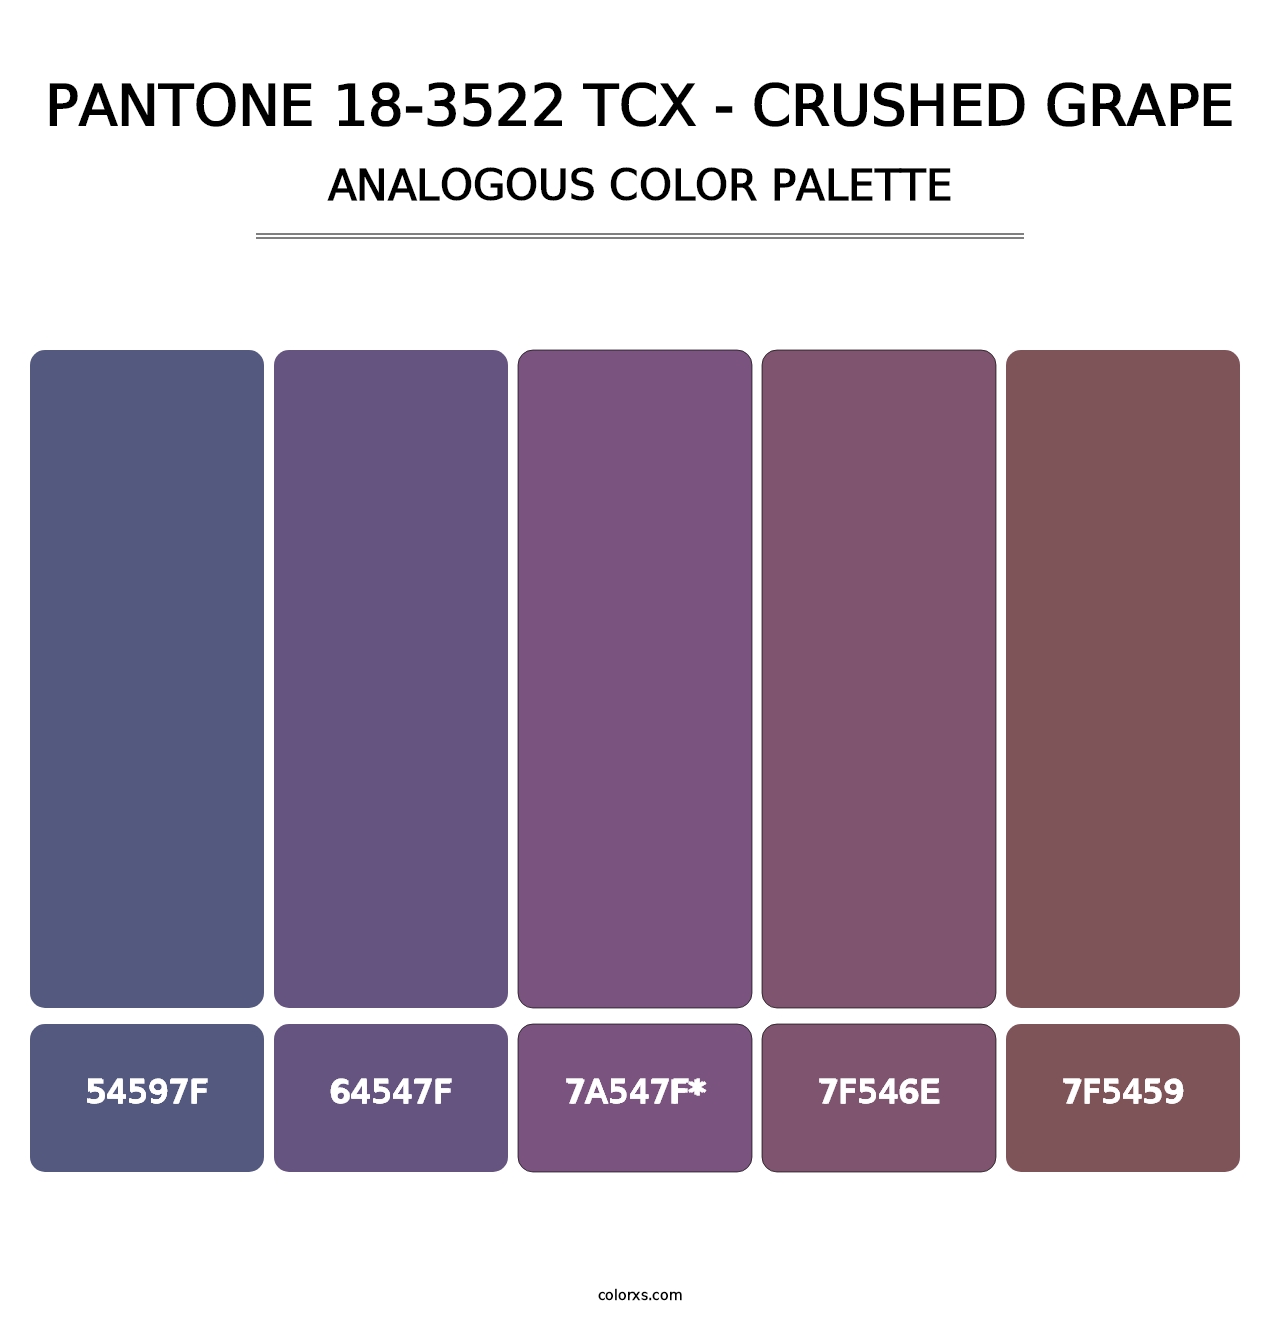 PANTONE 18-3522 TCX - Crushed Grape - Analogous Color Palette